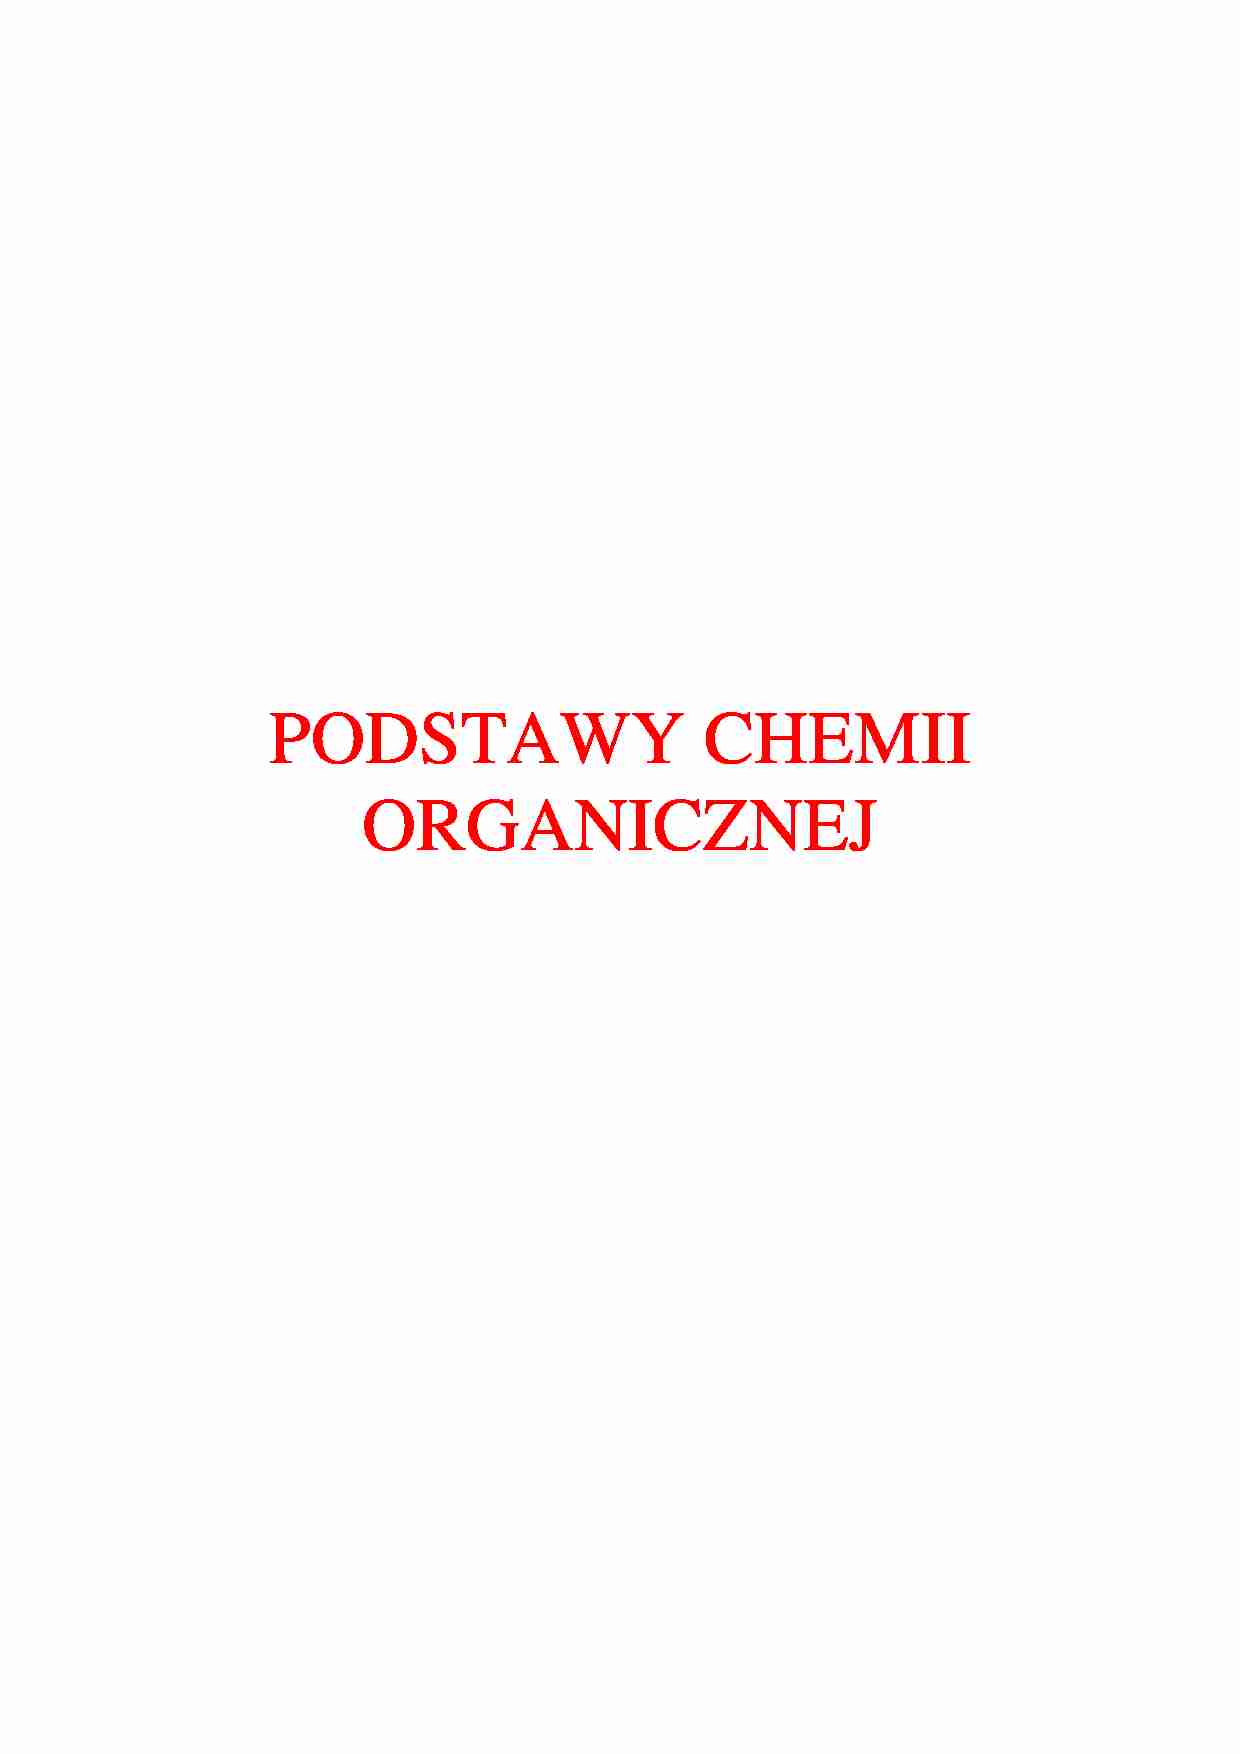 Chemia organiczna - wykład - Struktura związków organicznych - strona 1